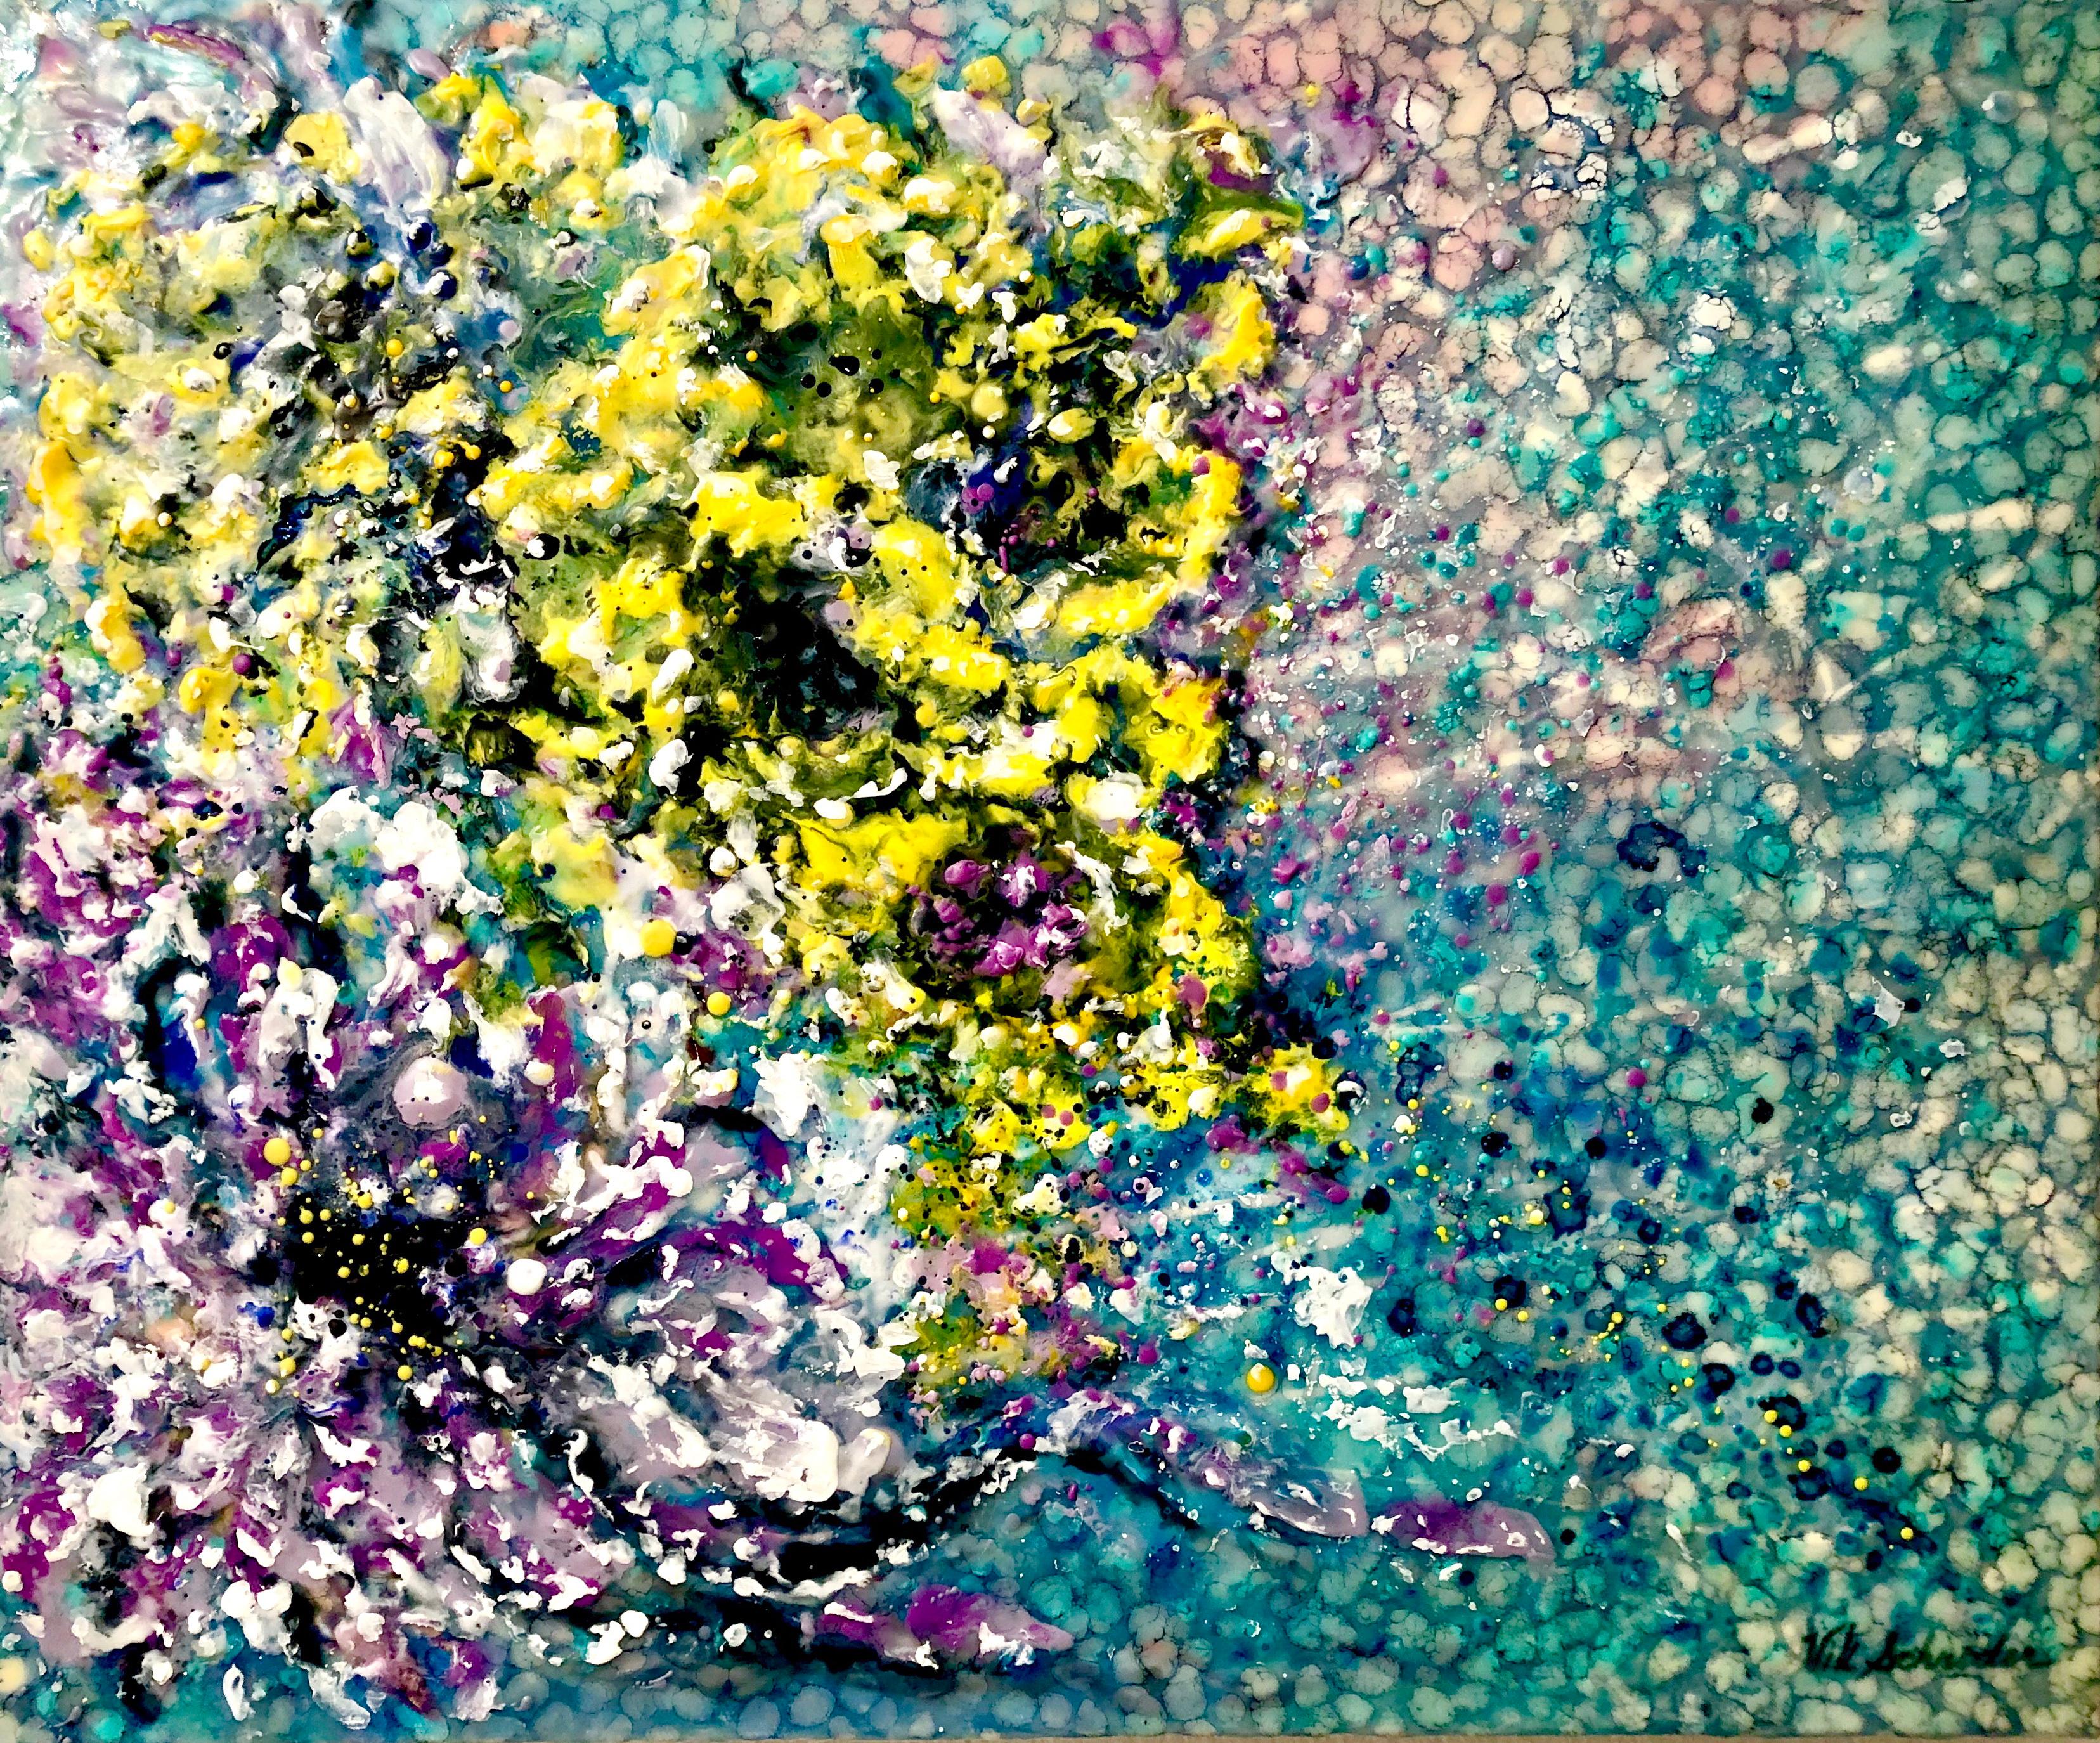 Fleurs d'eau. À l'encaustique ( cire chaude), impressionnisme. Mer / Flore / Abstrait 